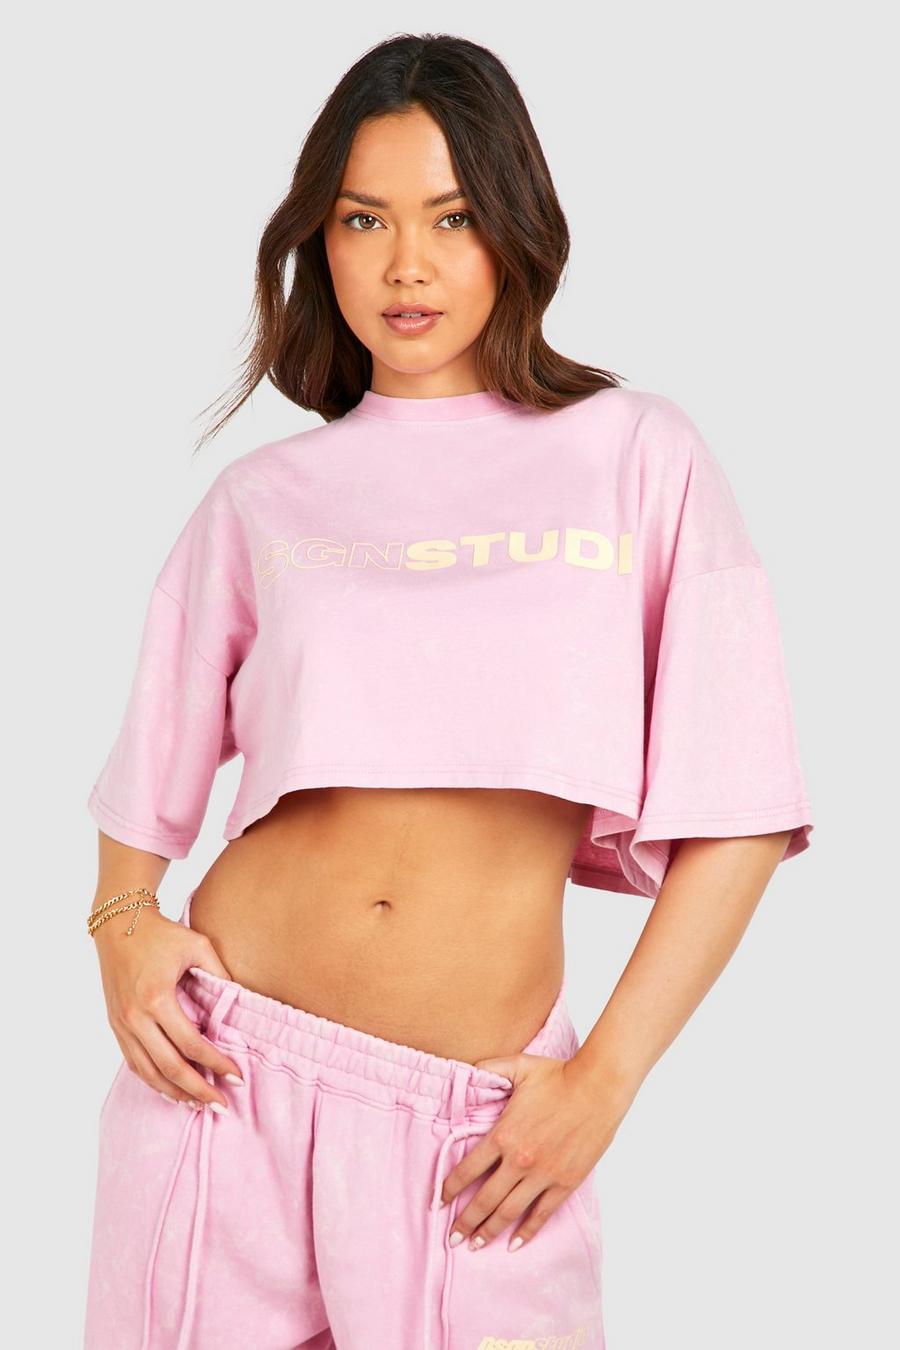 Kastiges T-Shirt, Pink